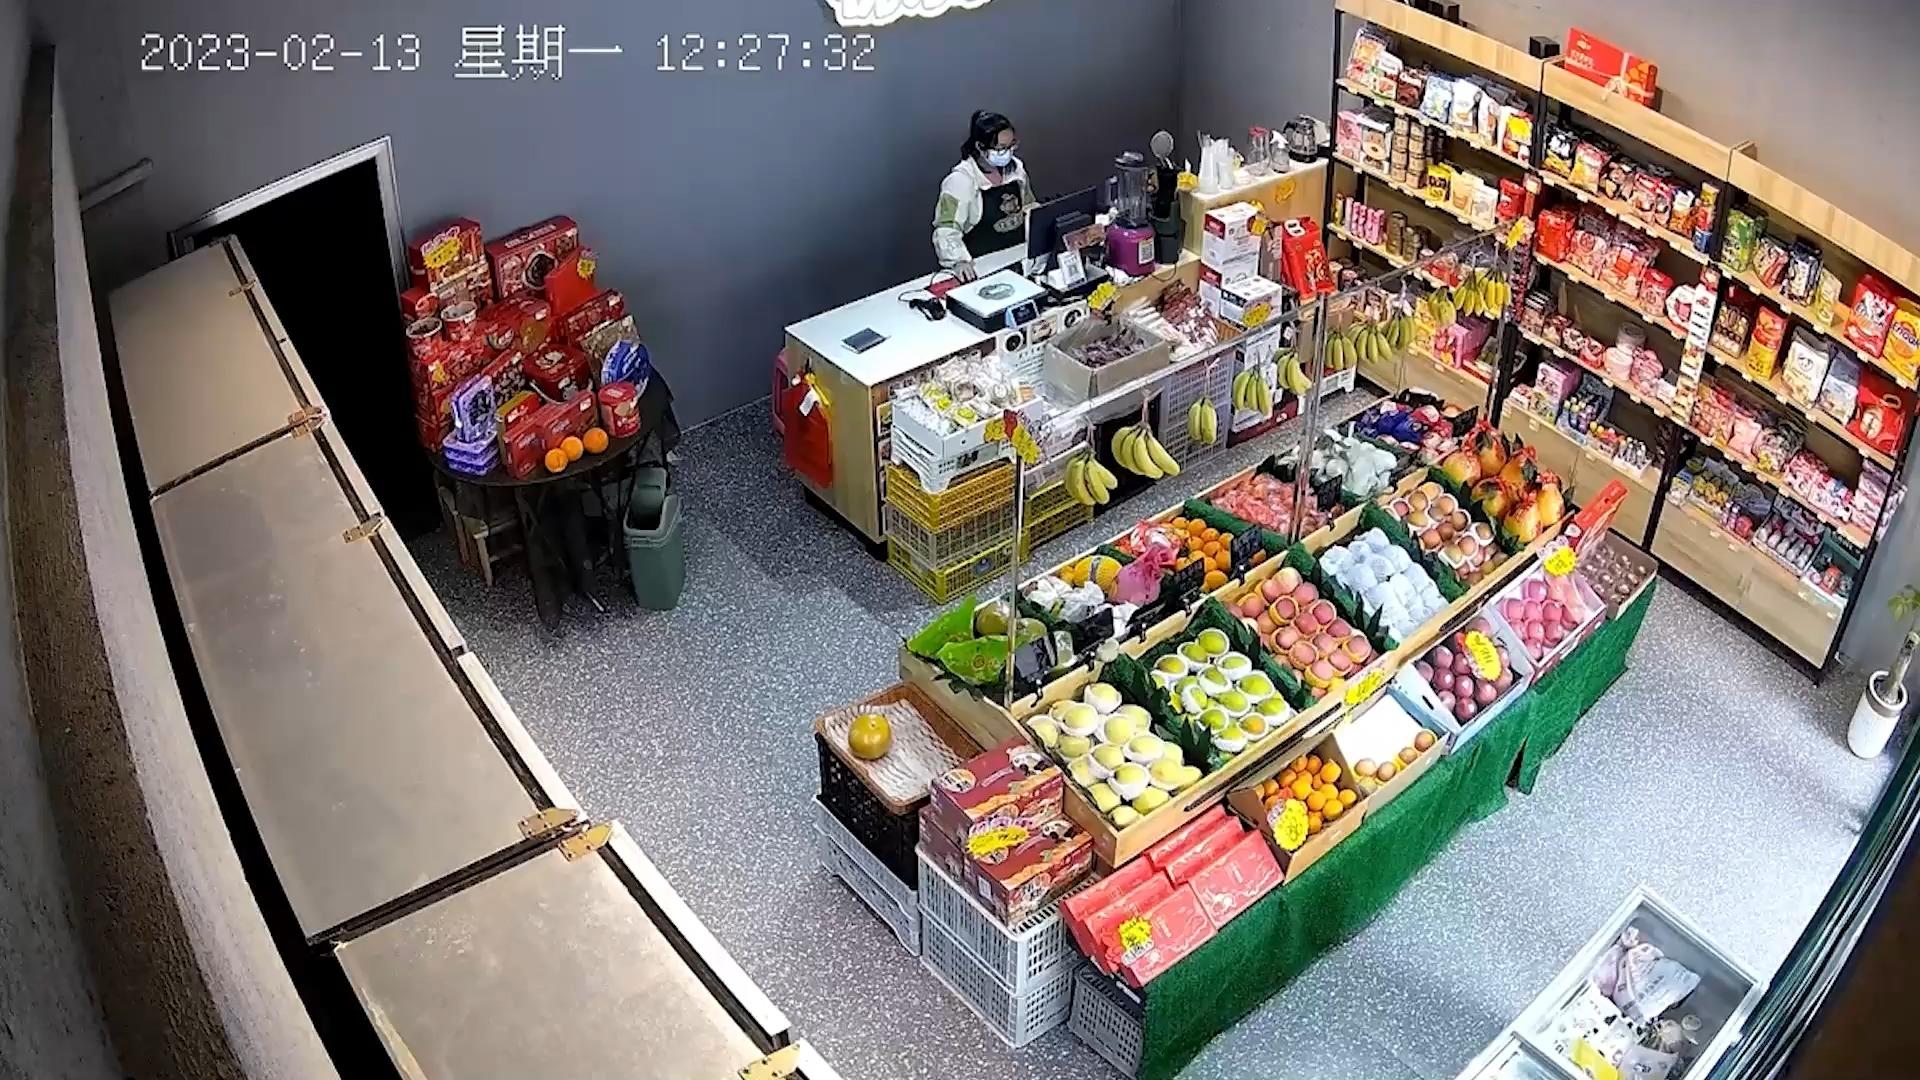 L'auto ha colpito il supermercato!  Incidente horror in Cina